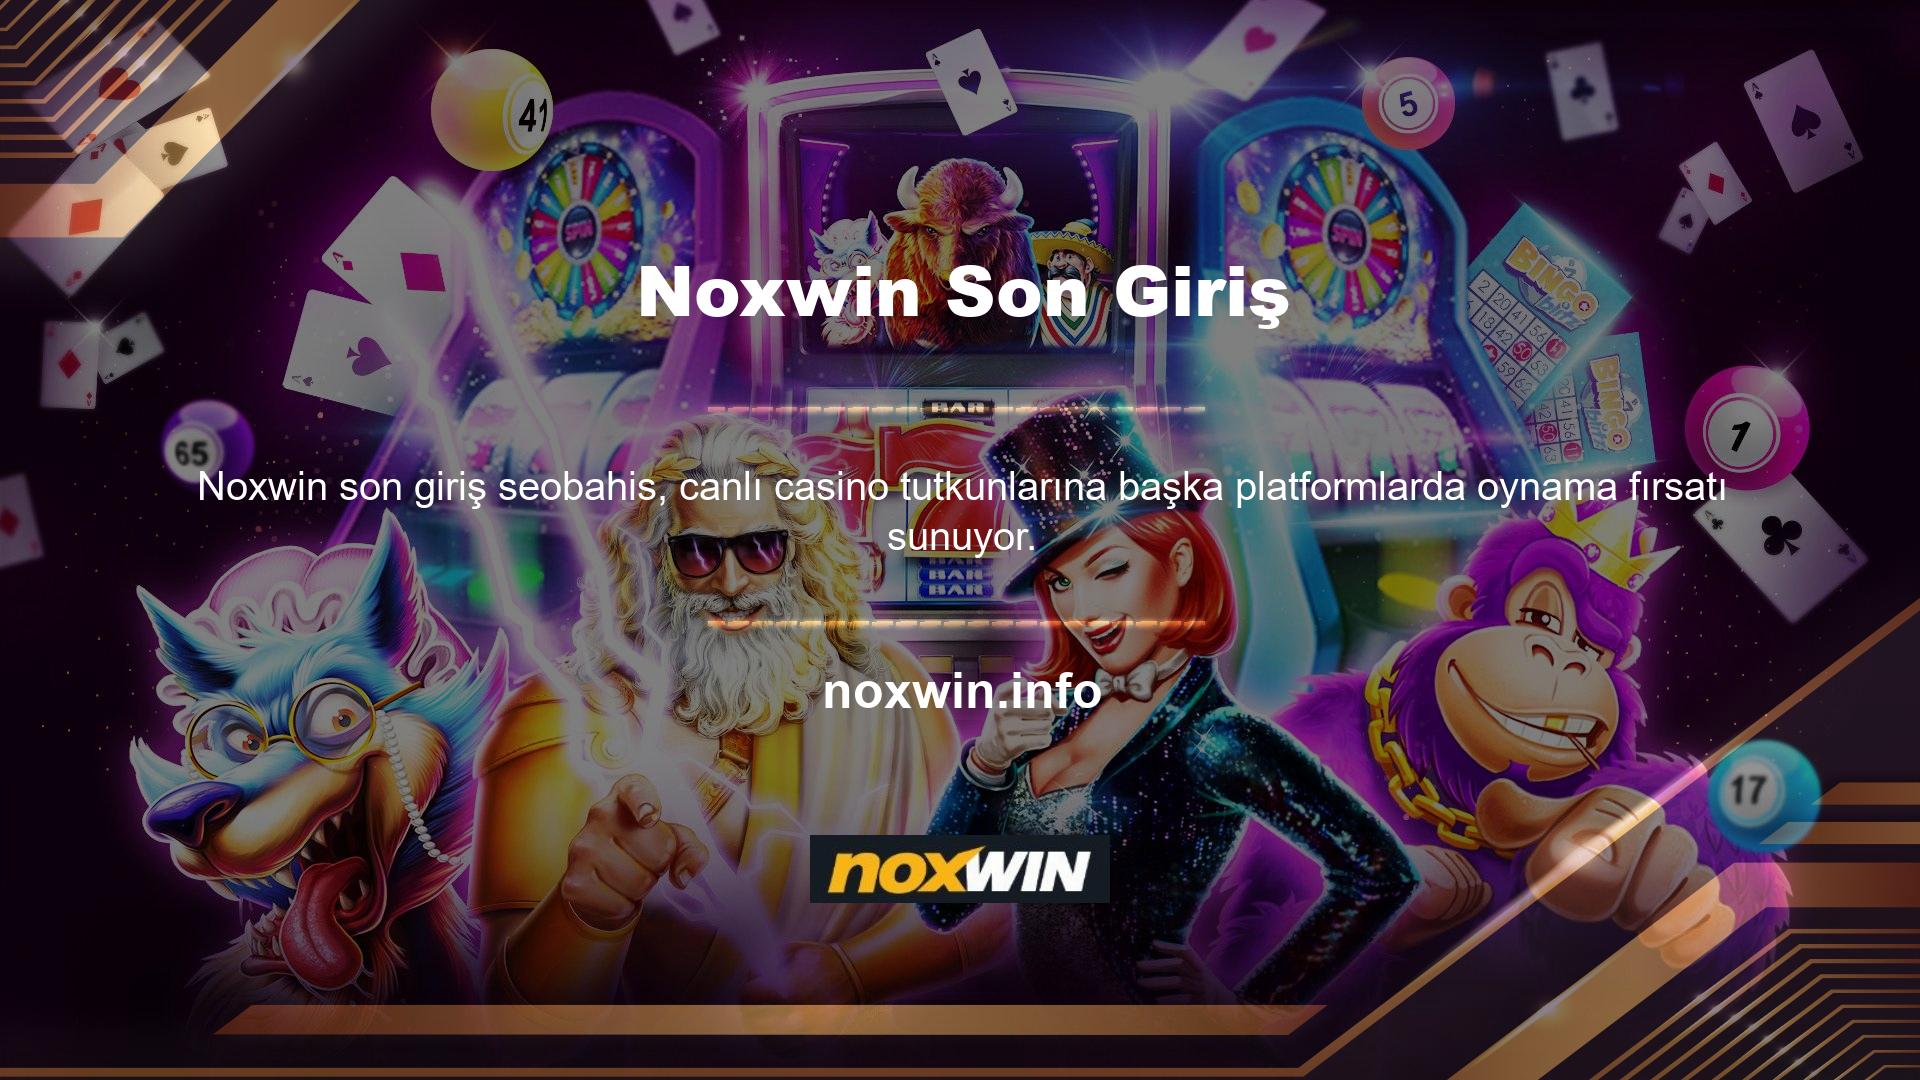 Noxwin casino oyunları bölümünde oyun sunmaktadır